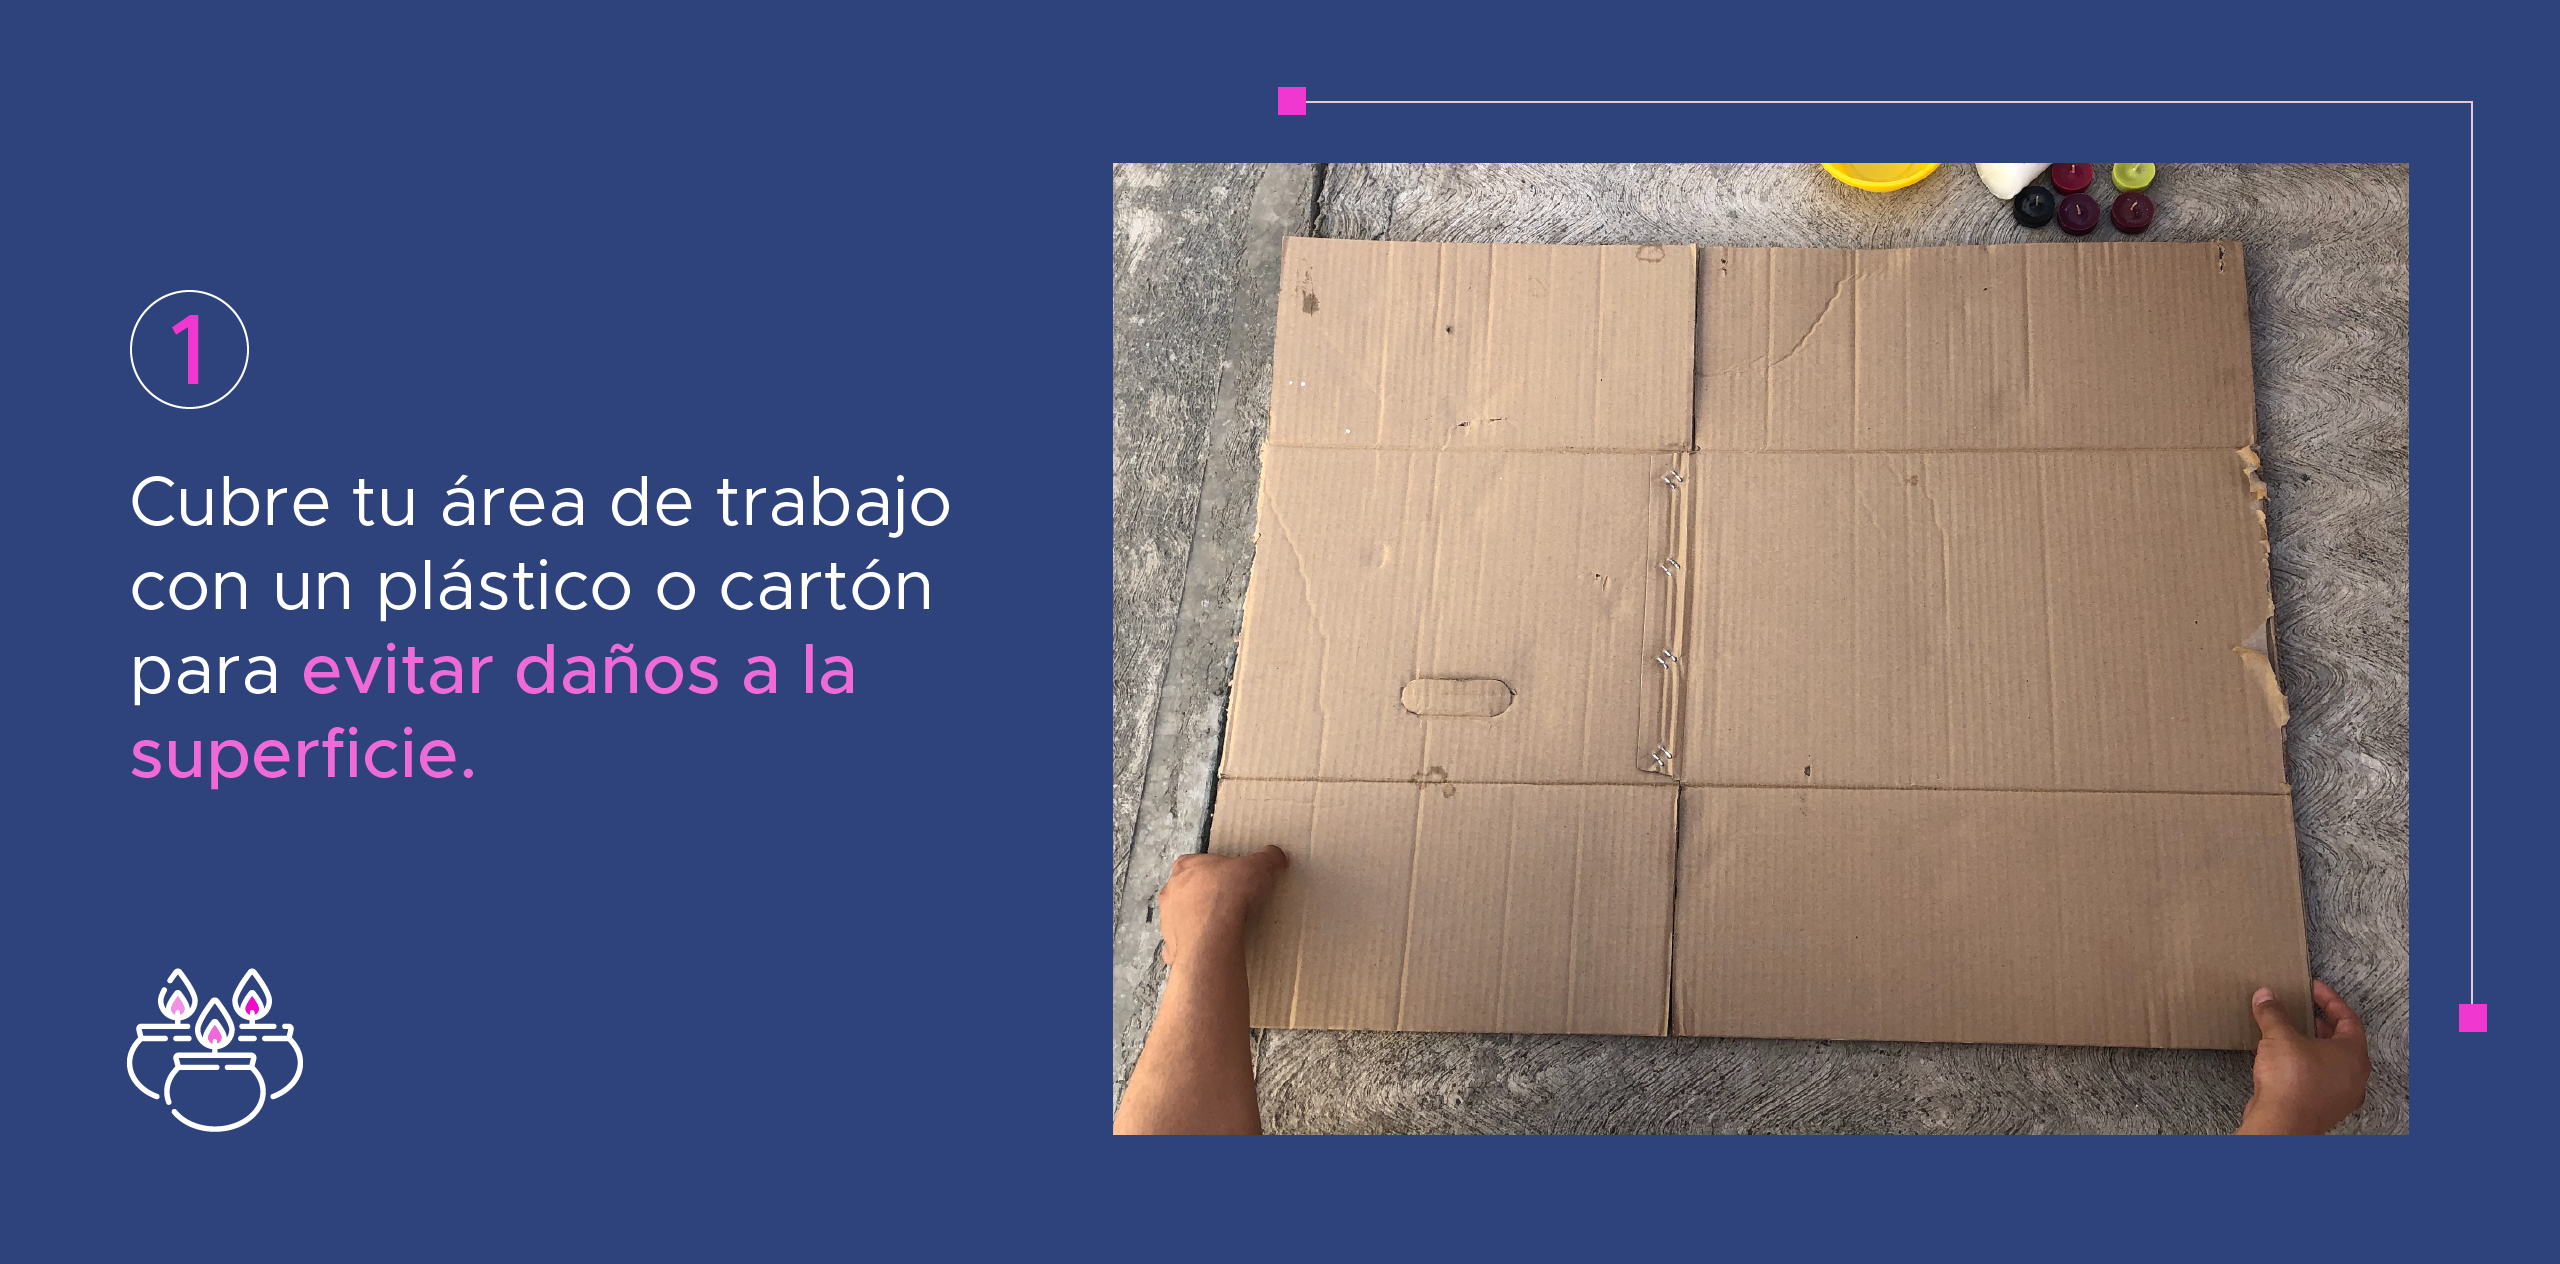 1. Cubre tu área de trabajo con un plástico o cartón para evitar daños a la superficie